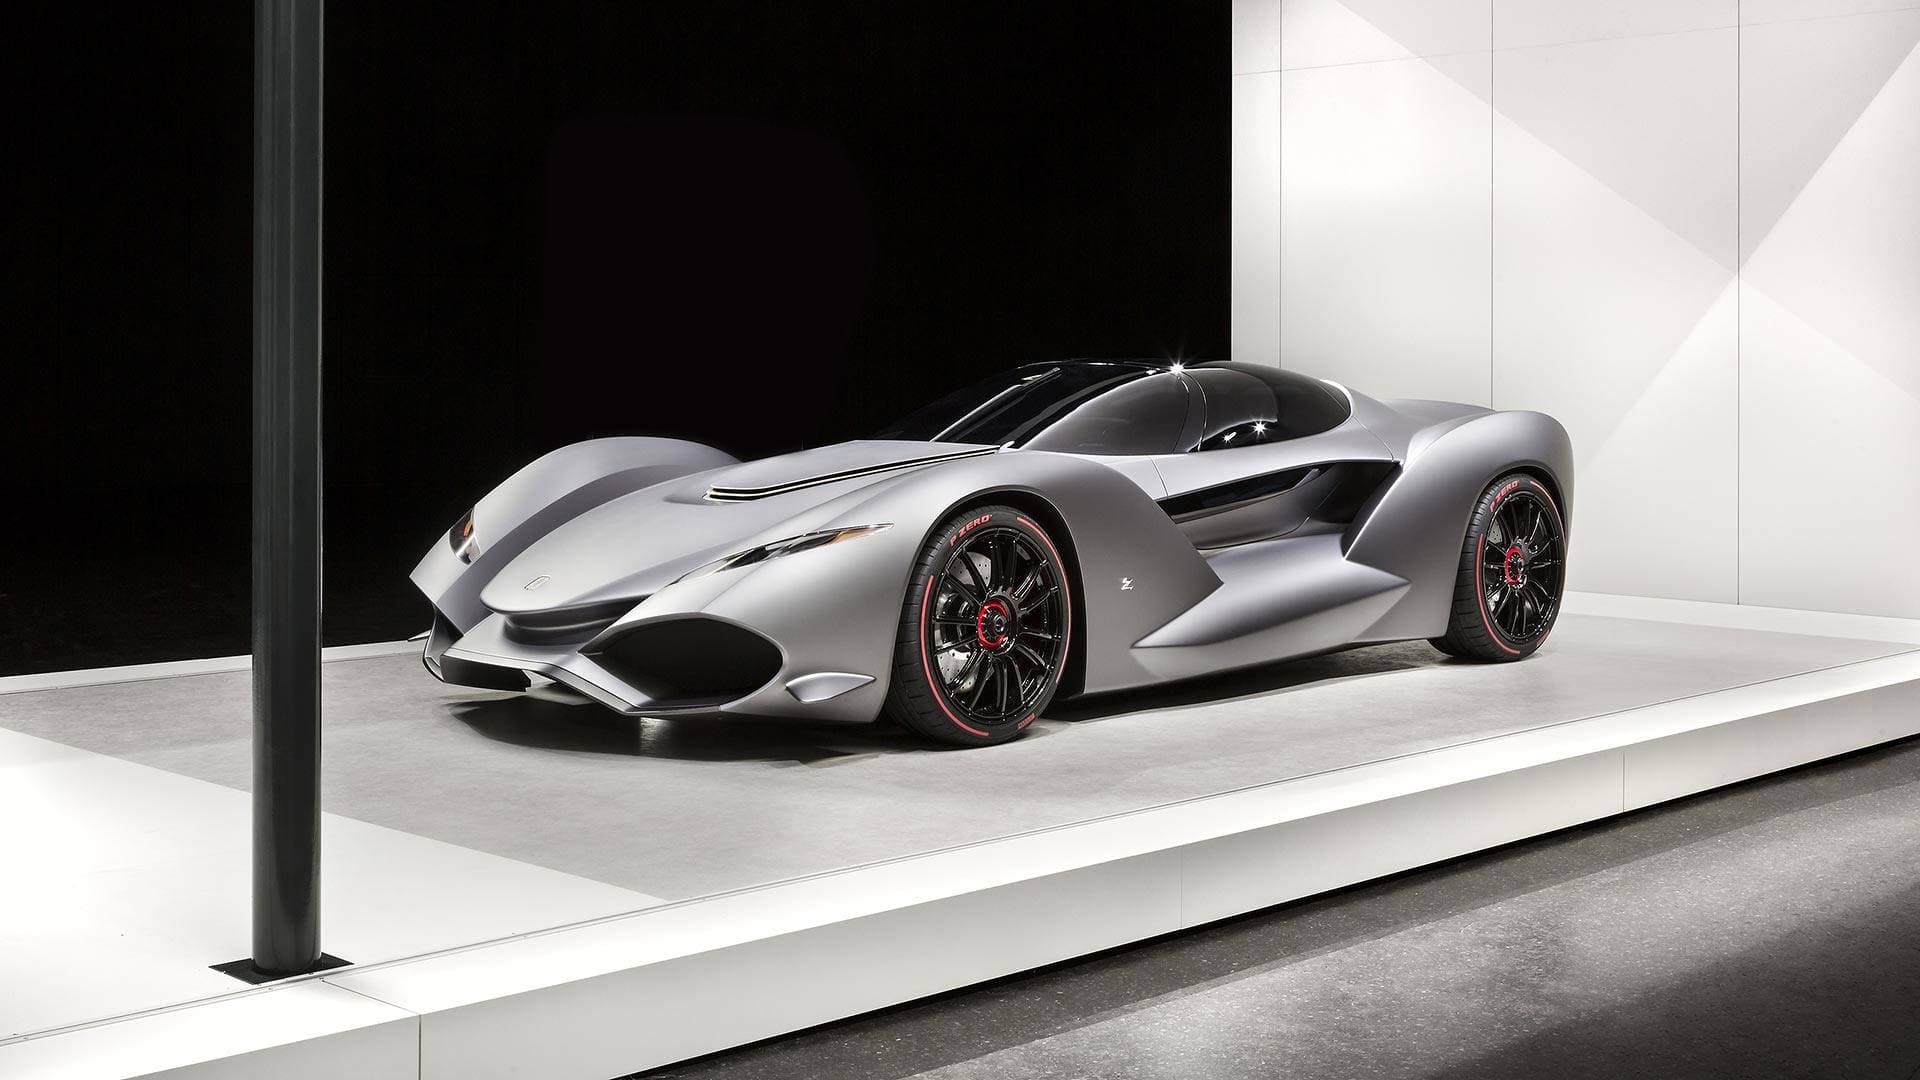 Zagato’s New IsoRivolta Vision Gran Turismo Unveiled